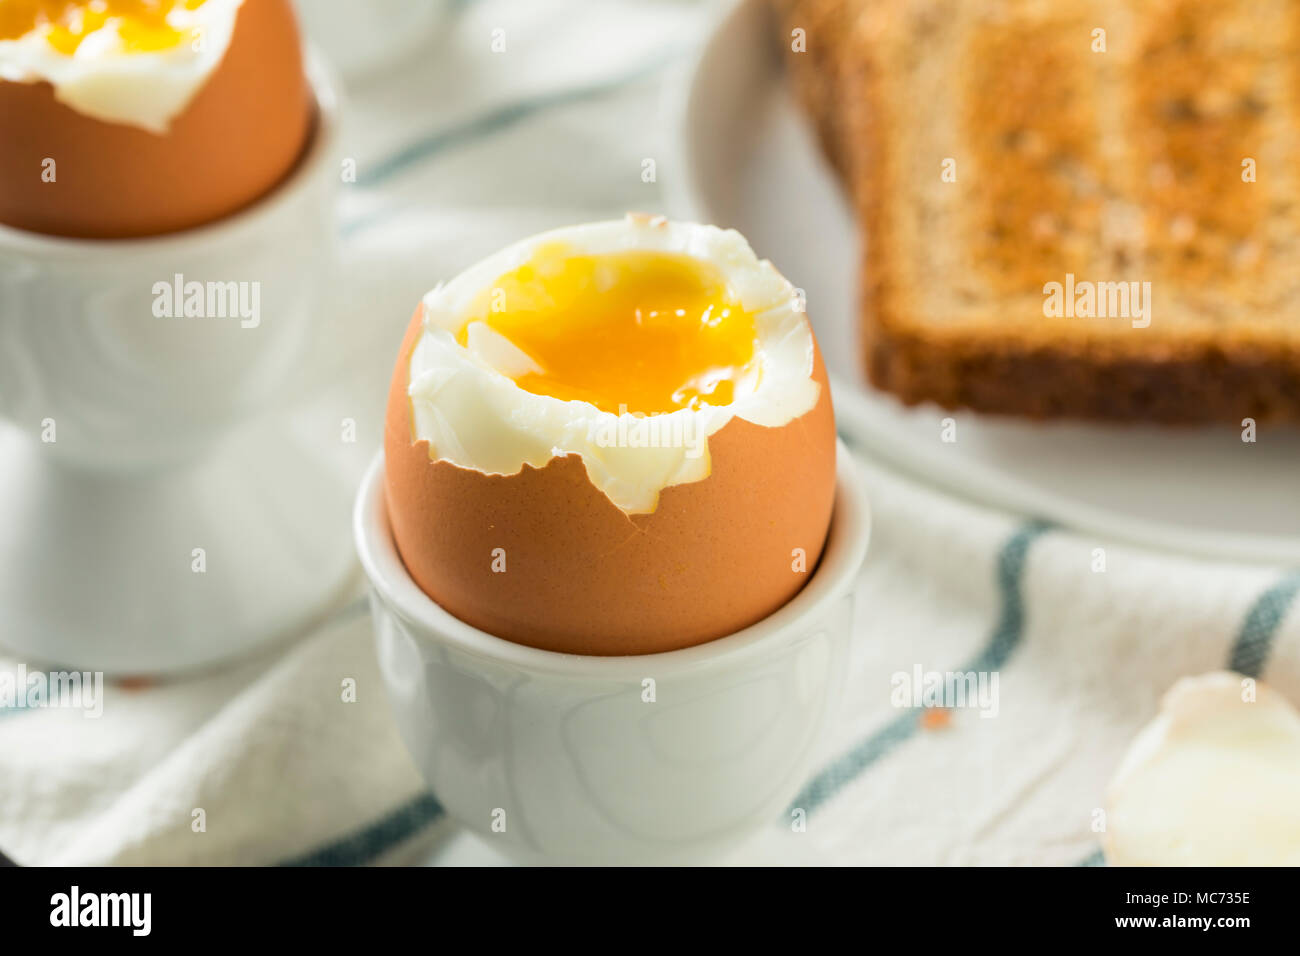 https://c8.alamy.com/comp/MC735E/homemade-soft-boiled-egg-in-a-cup-with-toast-MC735E.jpg